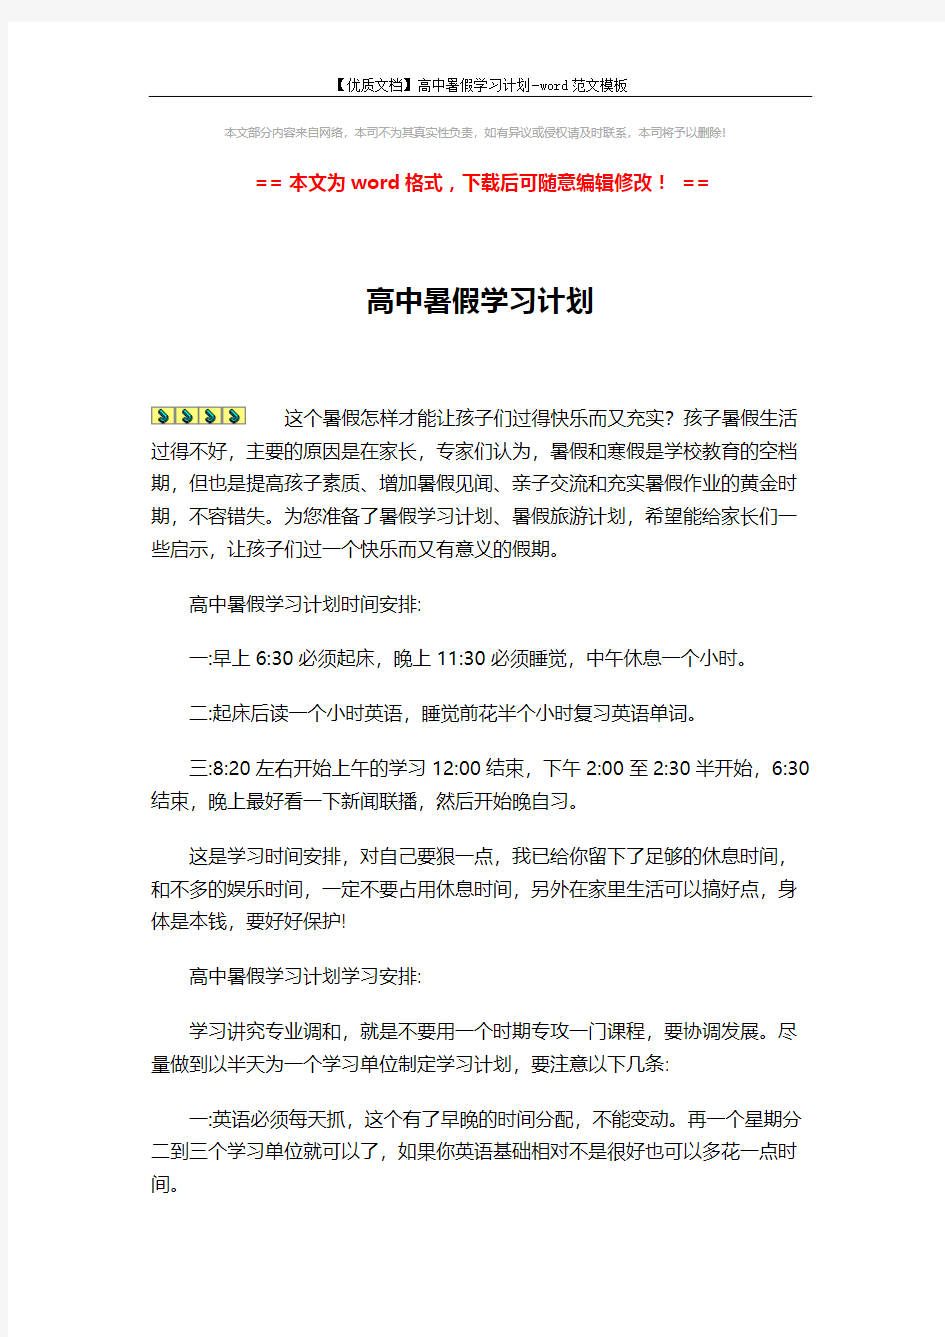 【优质文档】高中暑假学习计划-word范文模板 (2页)